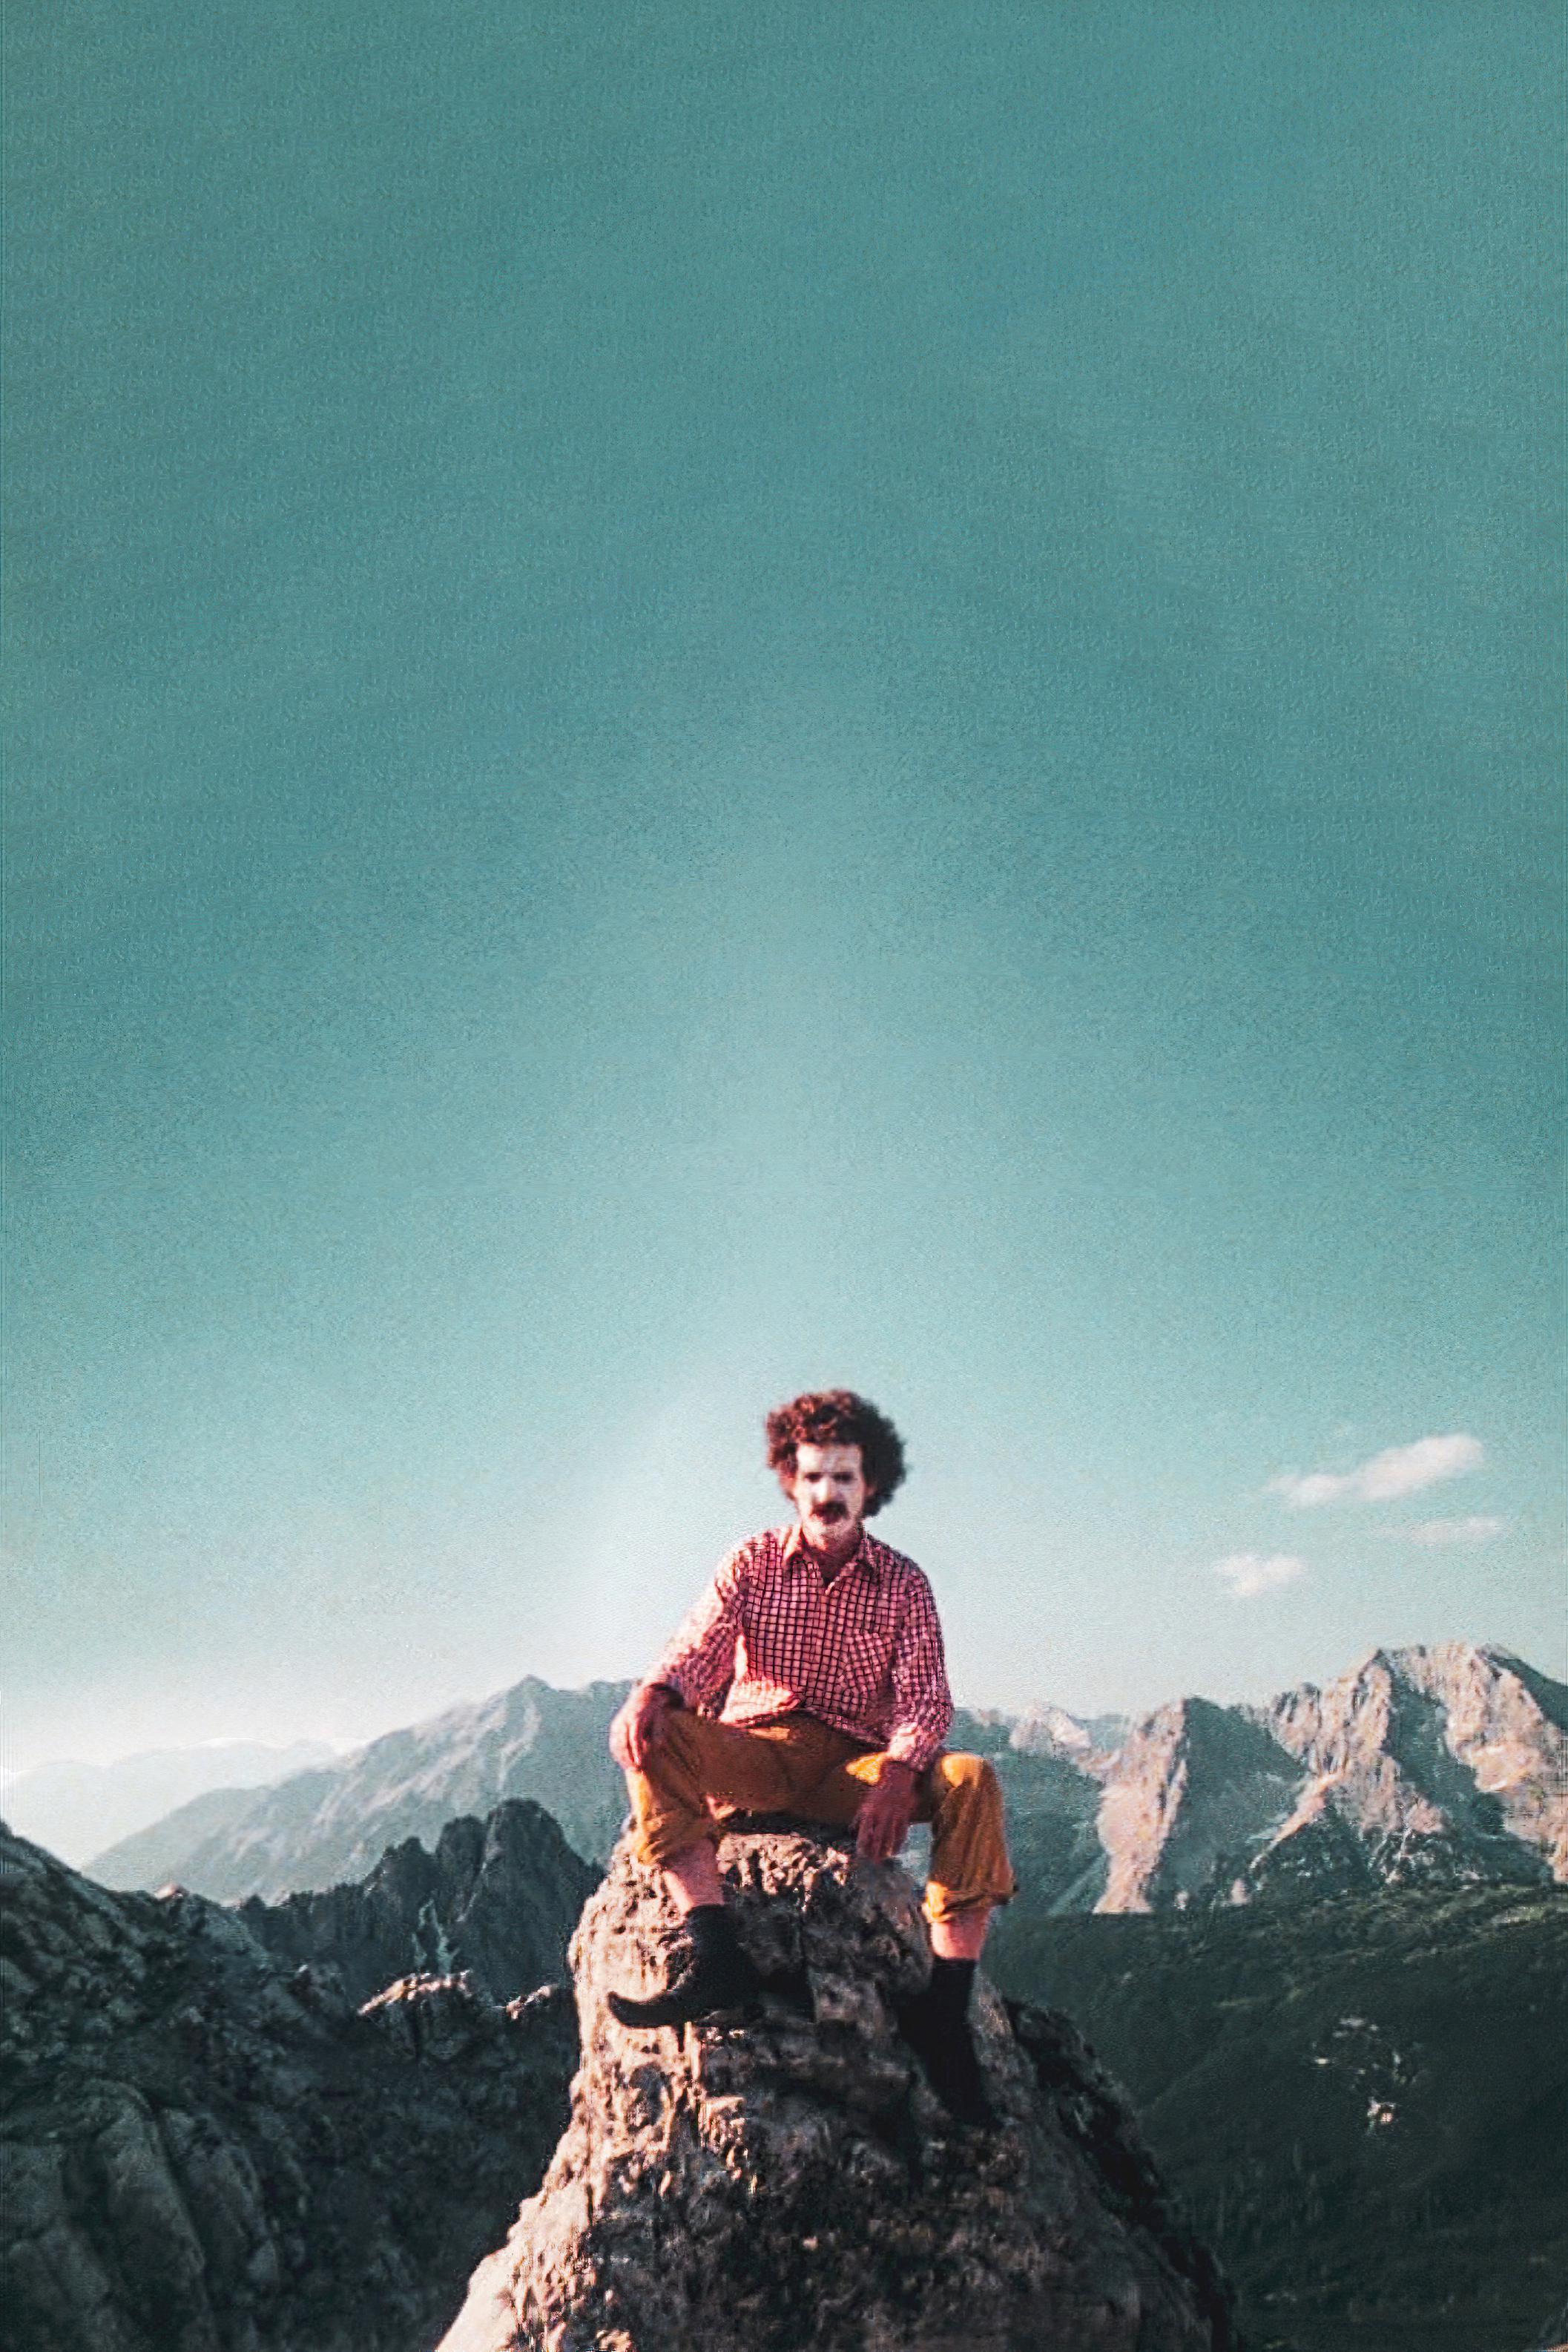 Der Untergang des Alpenlandes, AT 1974 (c) Werner Pirchner, Christian Berger